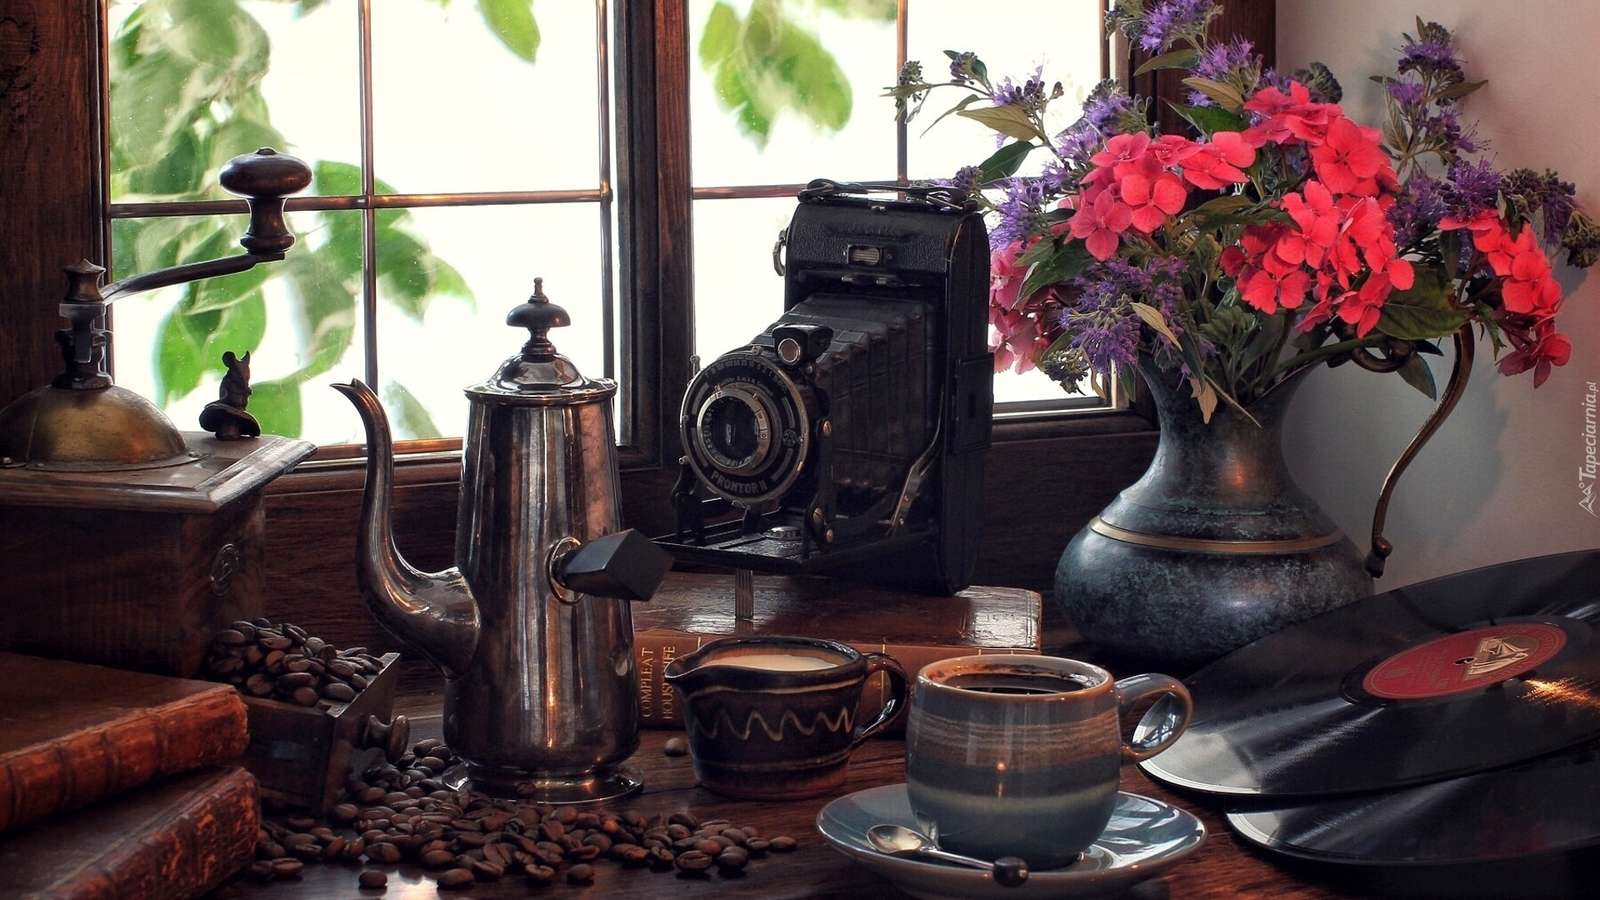 Антиквариат, Фотоаппарат, Посуда, Кофе, Цветы пазл онлайн